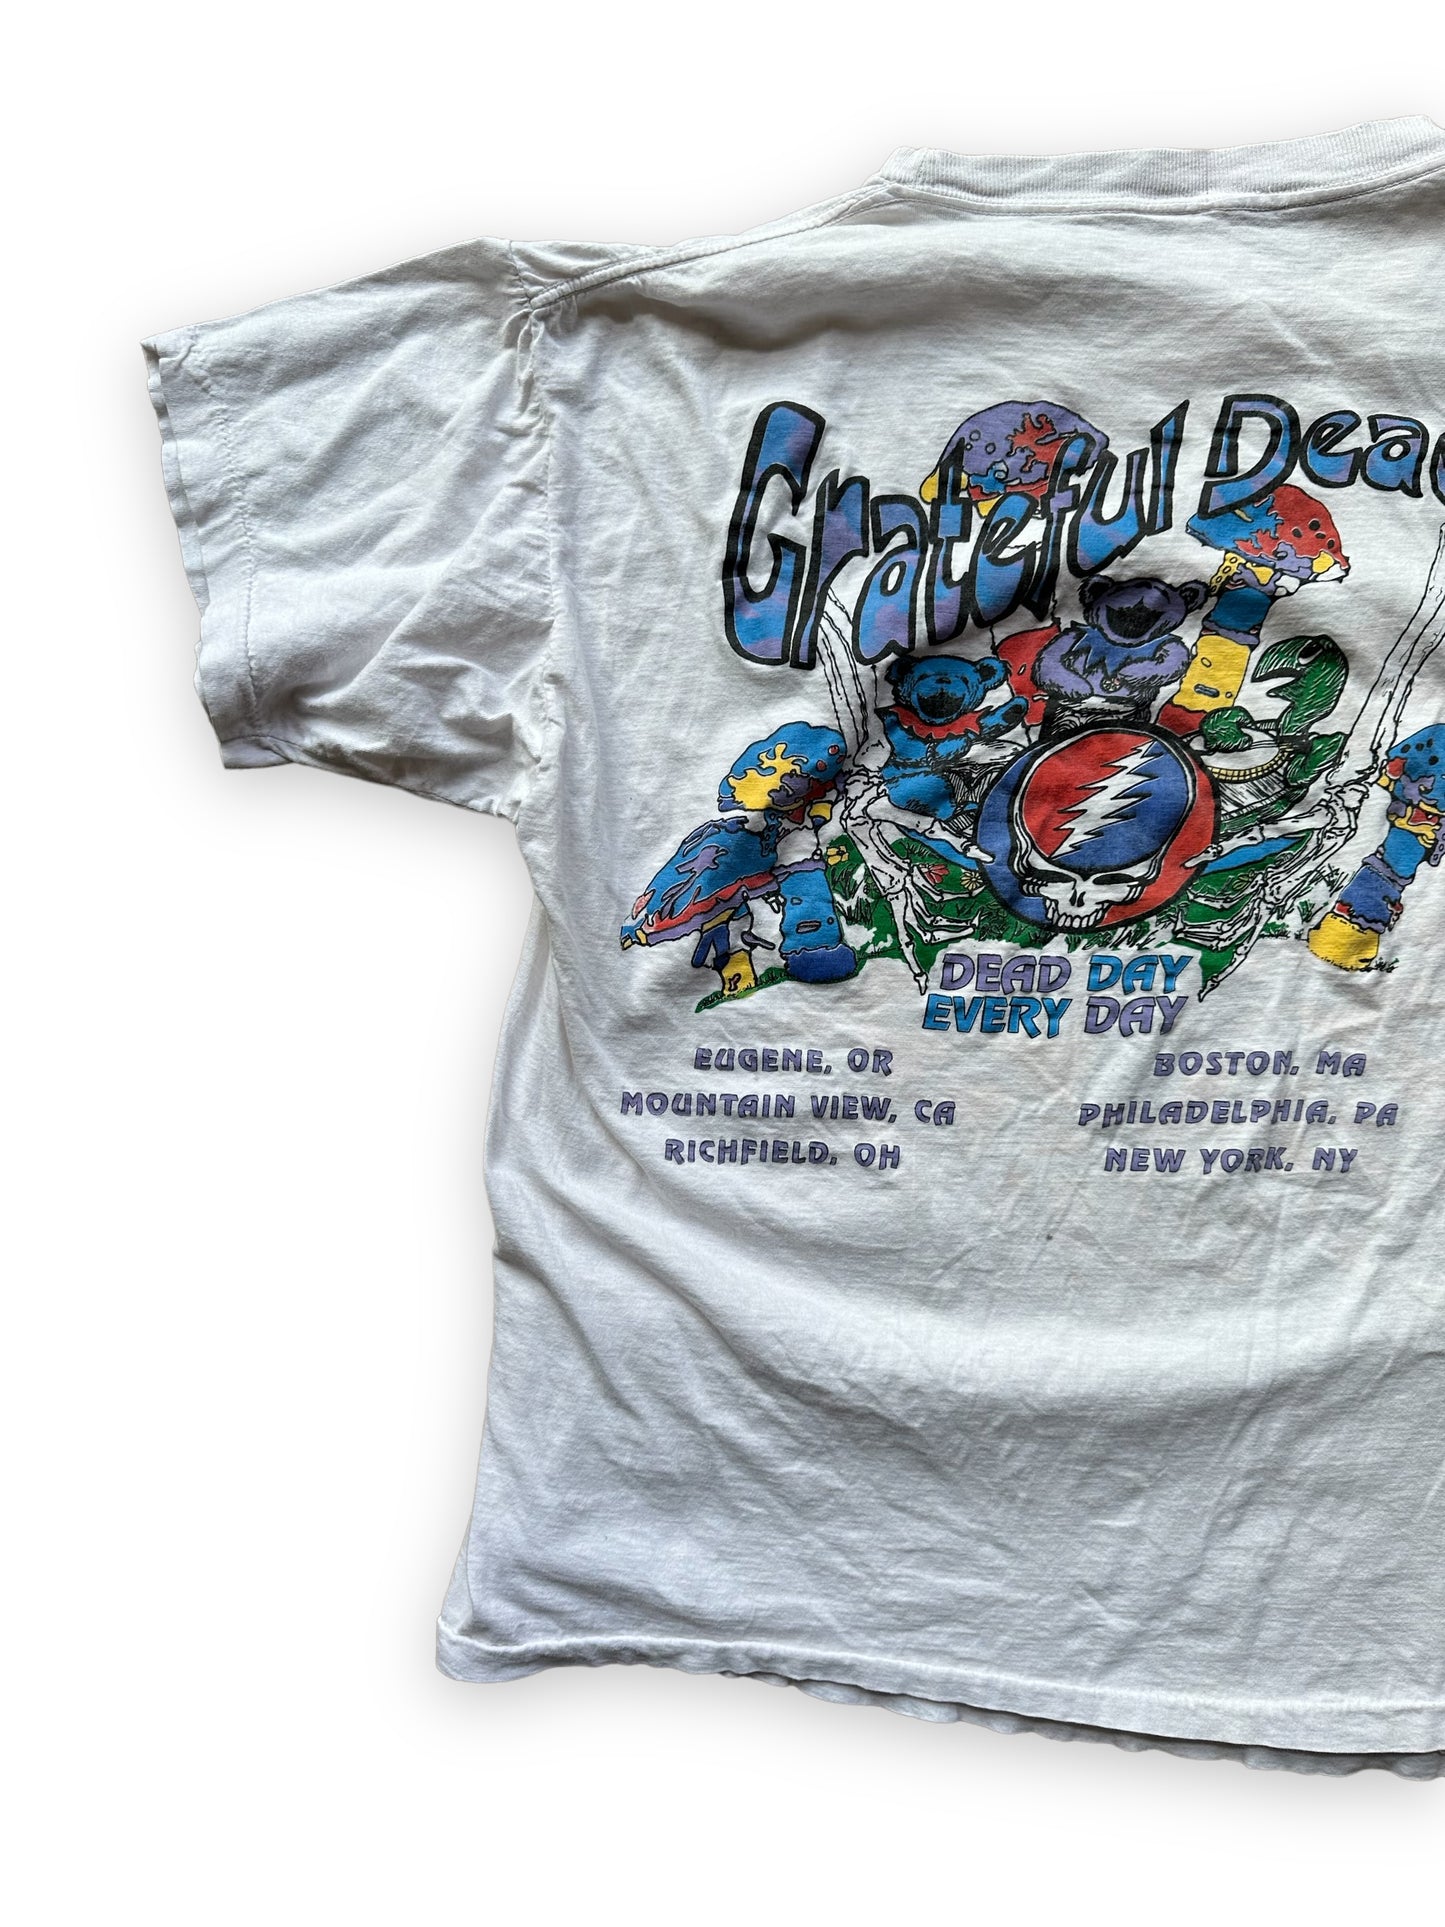 Rear Left View of Vintage Grateful Dead 1993 Summer Tour Bootleg Tee SZ L |  Vintage Grateful Dead Tee Seattle | Barn Owl Vintage